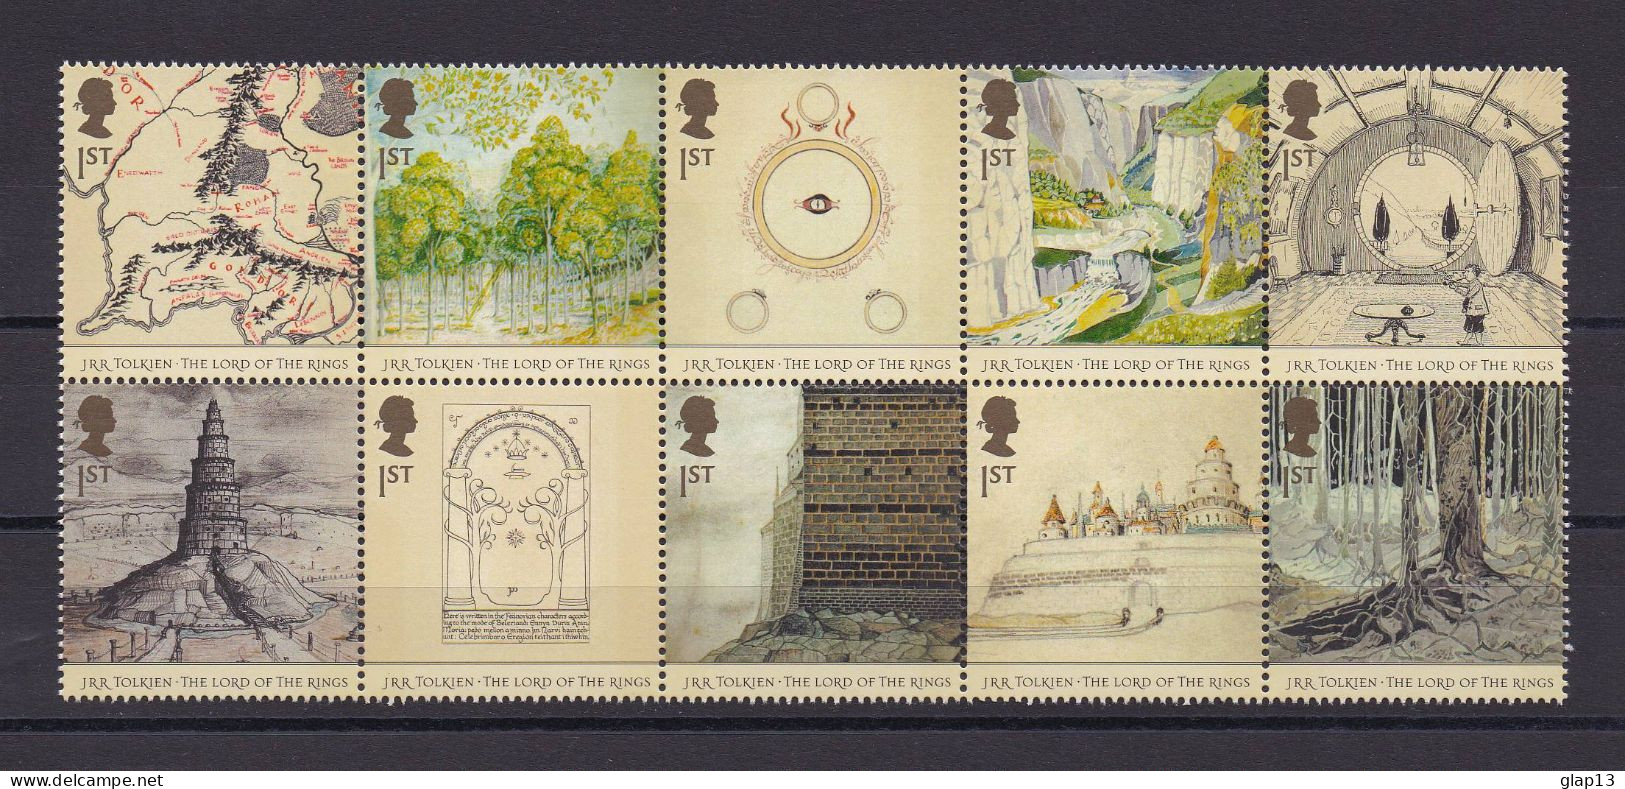 GRANDE-BRETAGNE 2004 TIMBRE N°2523/32 NEUF** LE SEIGNEUR DES ANNEAUX - Unused Stamps